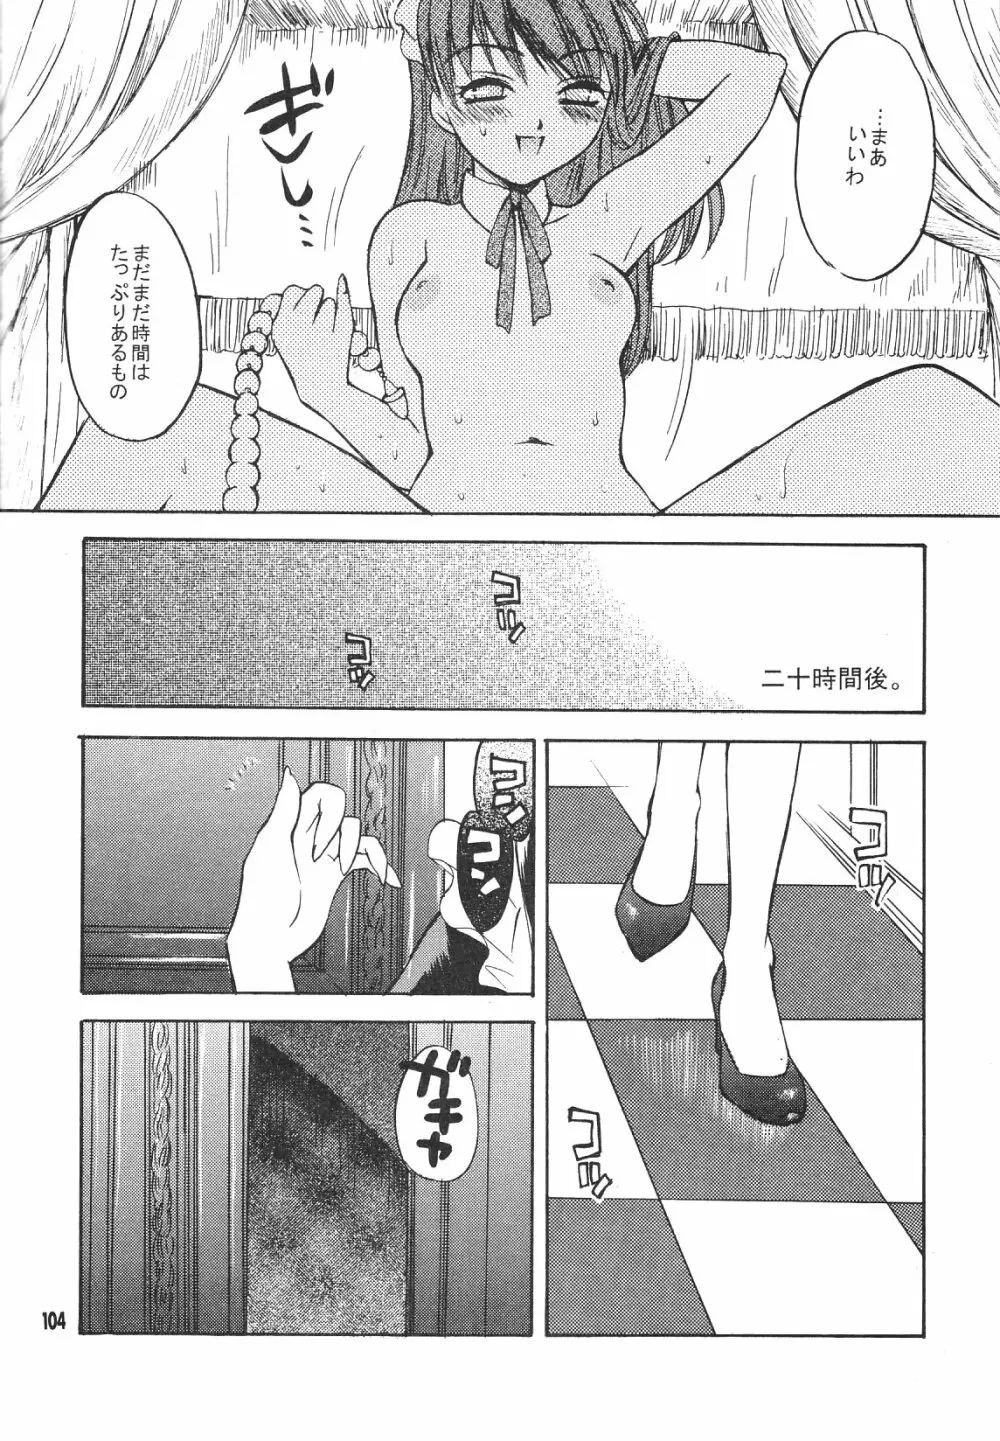 Maniac Juice 女シンジ再録集 ’96-’99 104ページ